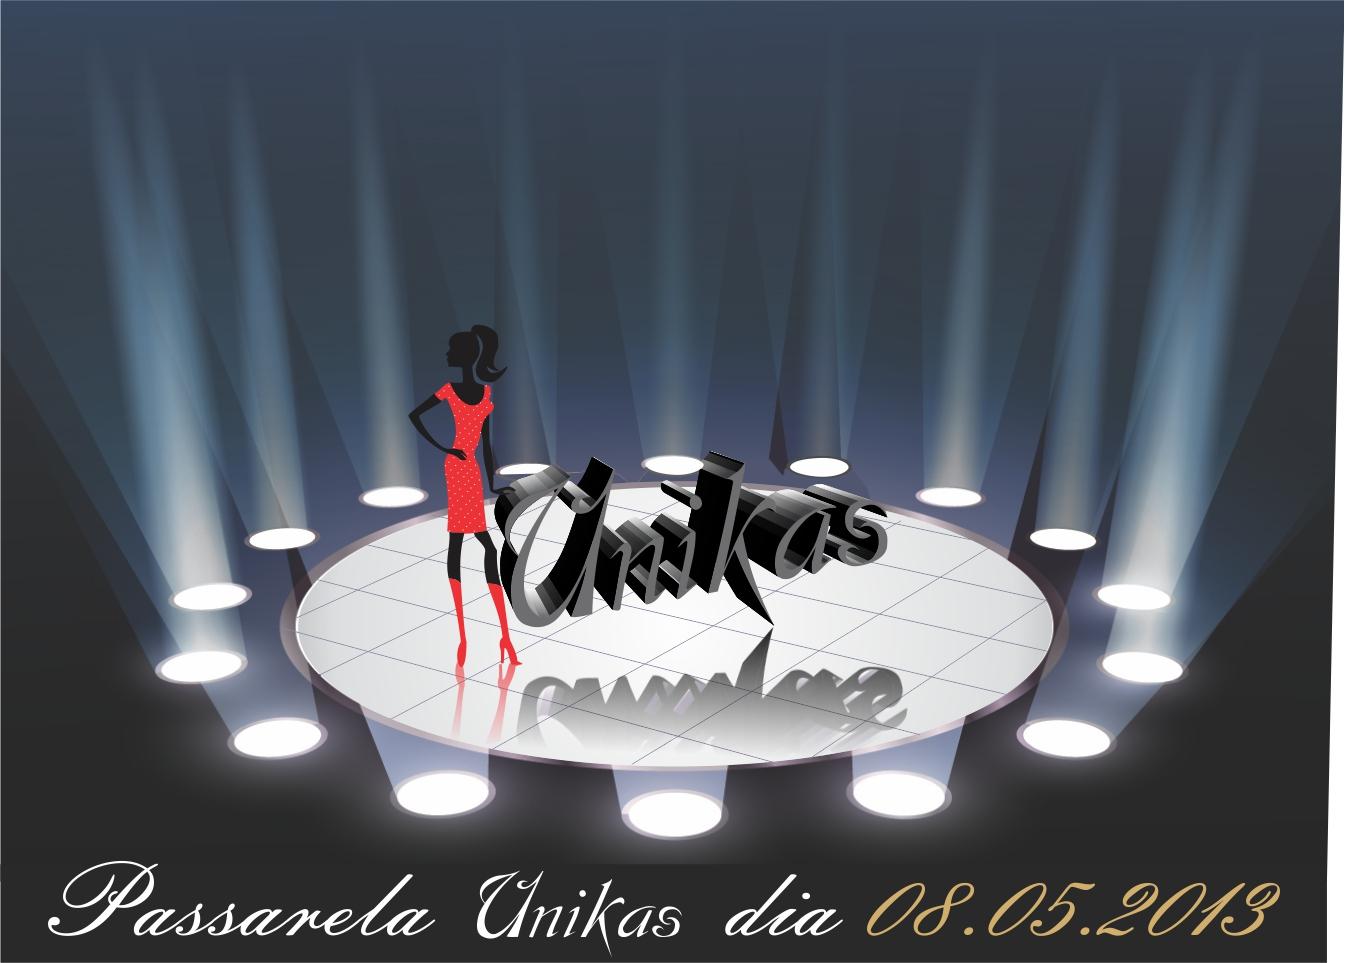 Loja Unikas logo